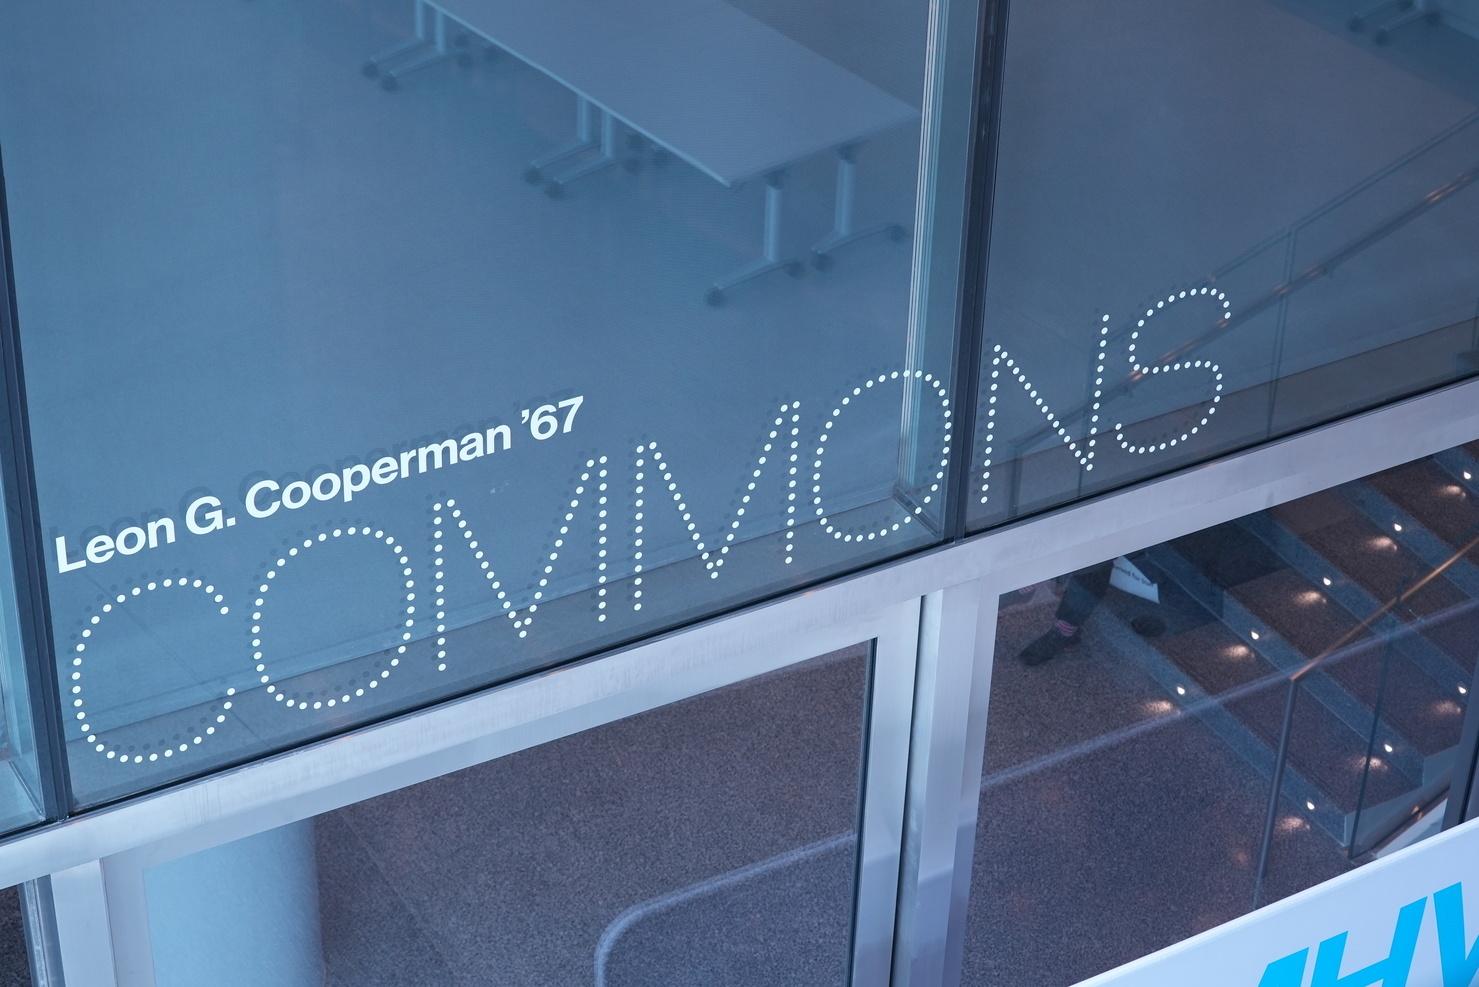 Cooperman Commons